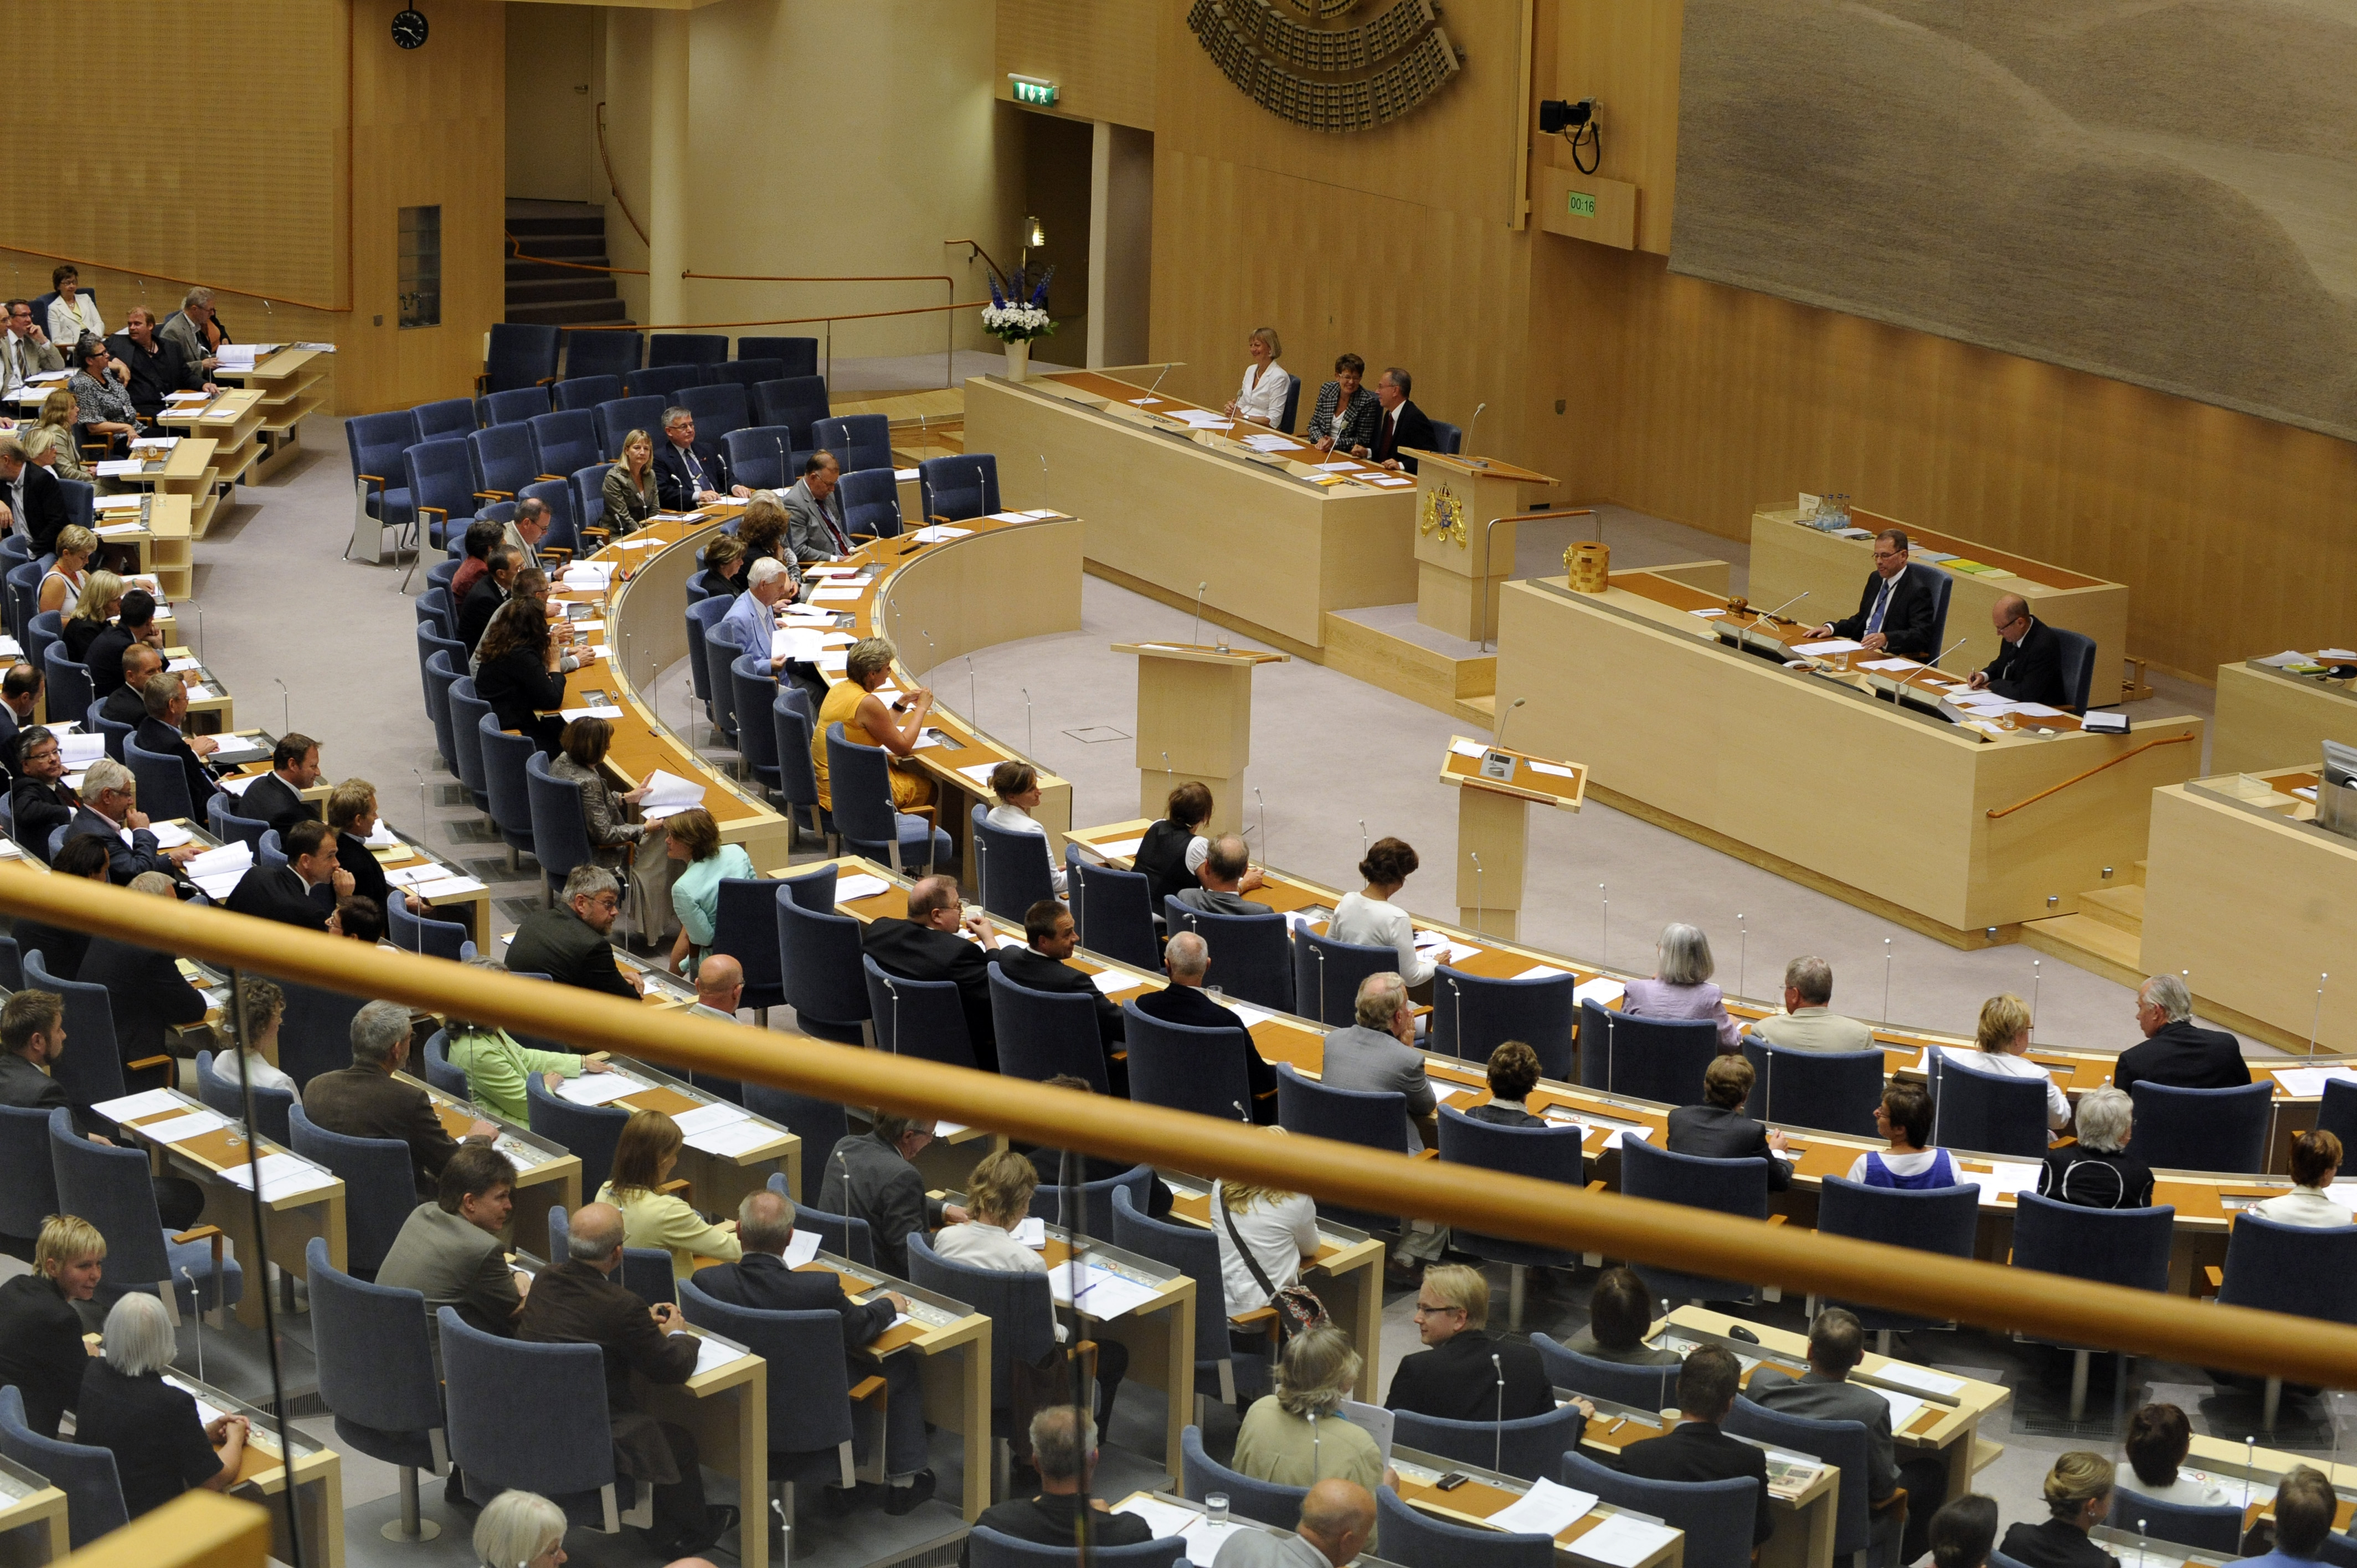 Riksdagsvalet 2010, Moderaterna, Fredrik Reinfeldt, Göran Hägglund, Politisk vilde, Göran Thingwall, Kristdemokraterna, Alliansen